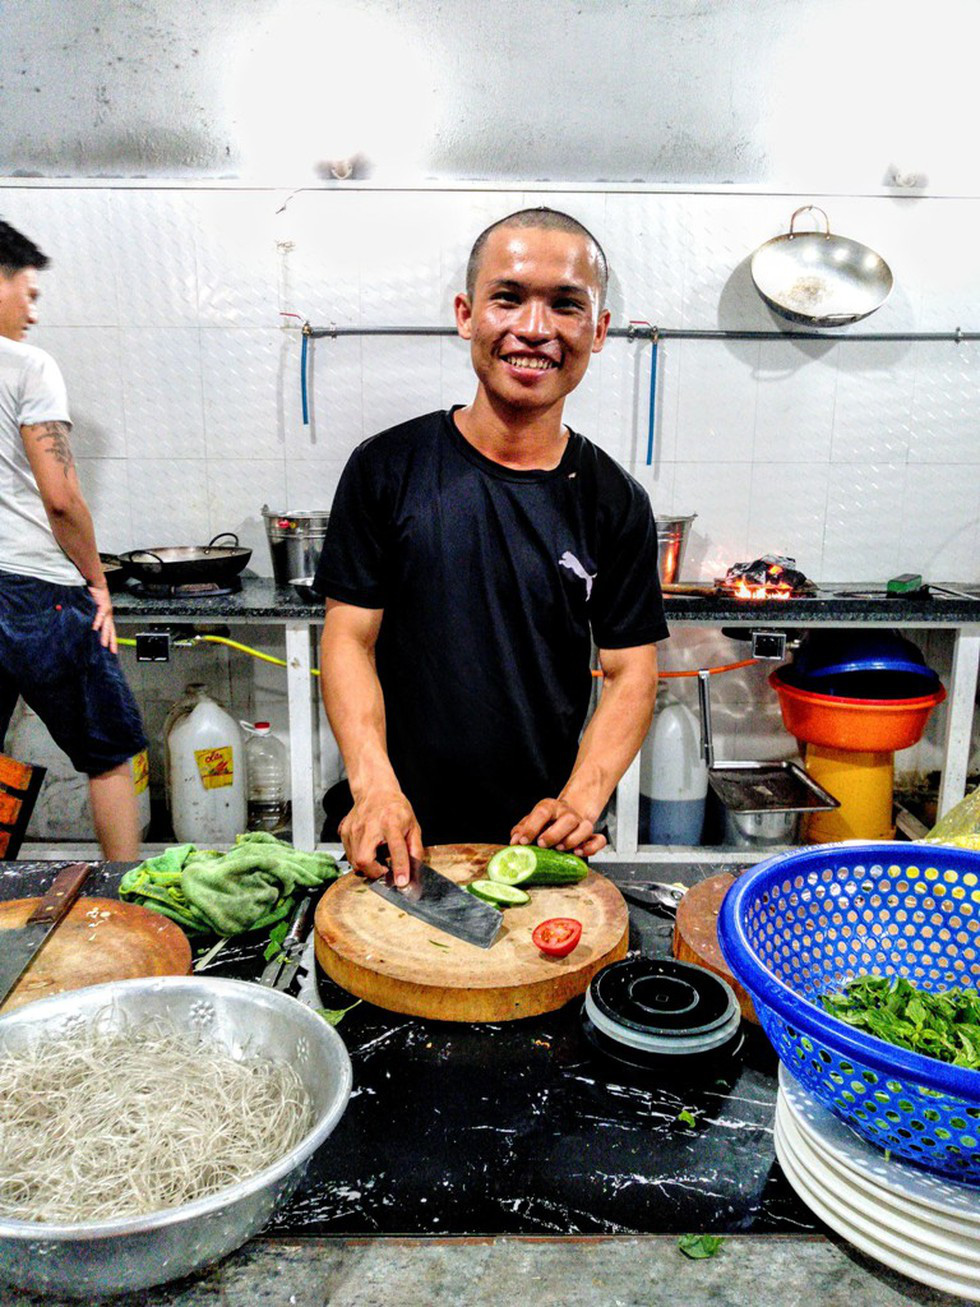 45 ngày đi bộ xuyên Việt với 0 đồng, chàng trai vừa xin ăn, làm thuê vừa quyên góp 127 triệu cho người nghèo - Ảnh 4.